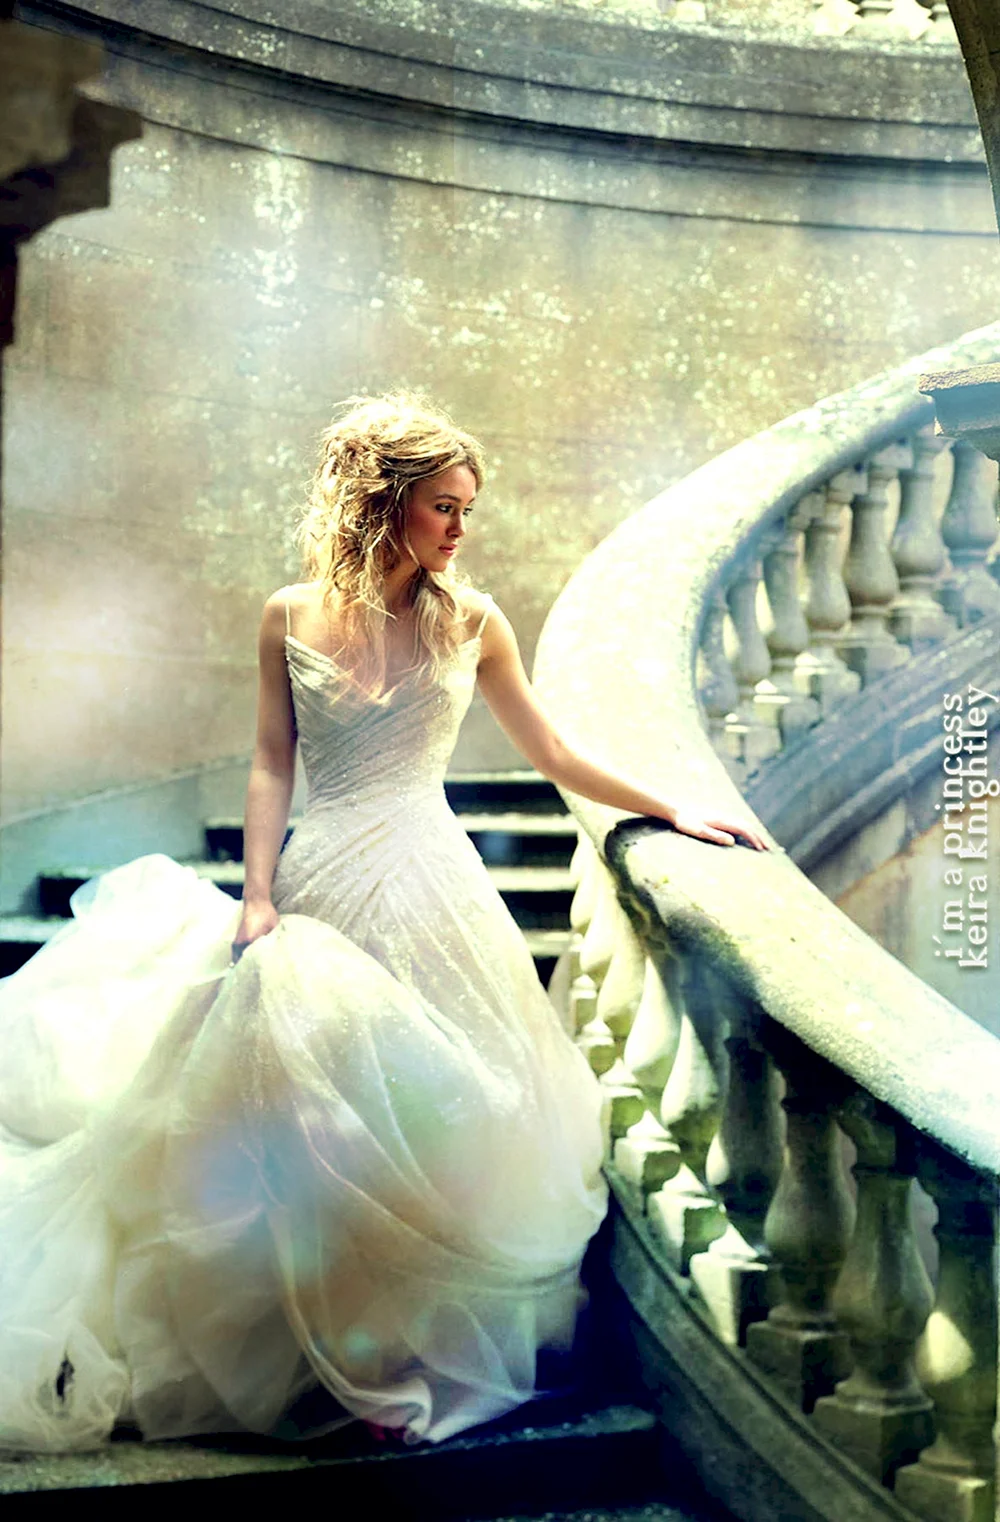 Кира Найтли свадебное платье